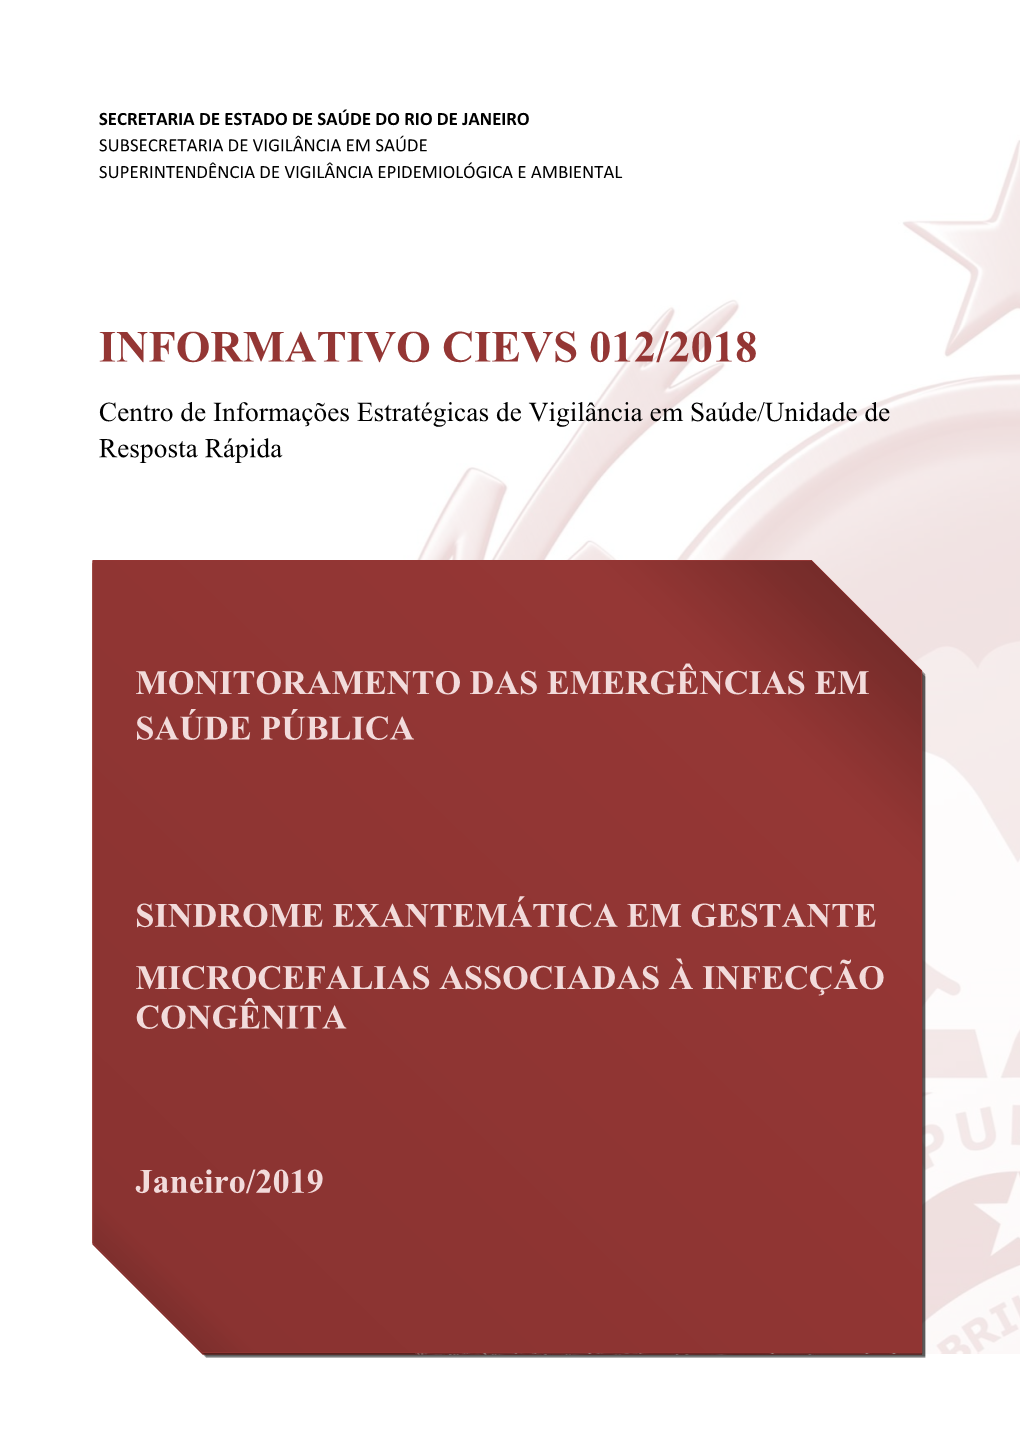 Informativo Cievs 012/2018